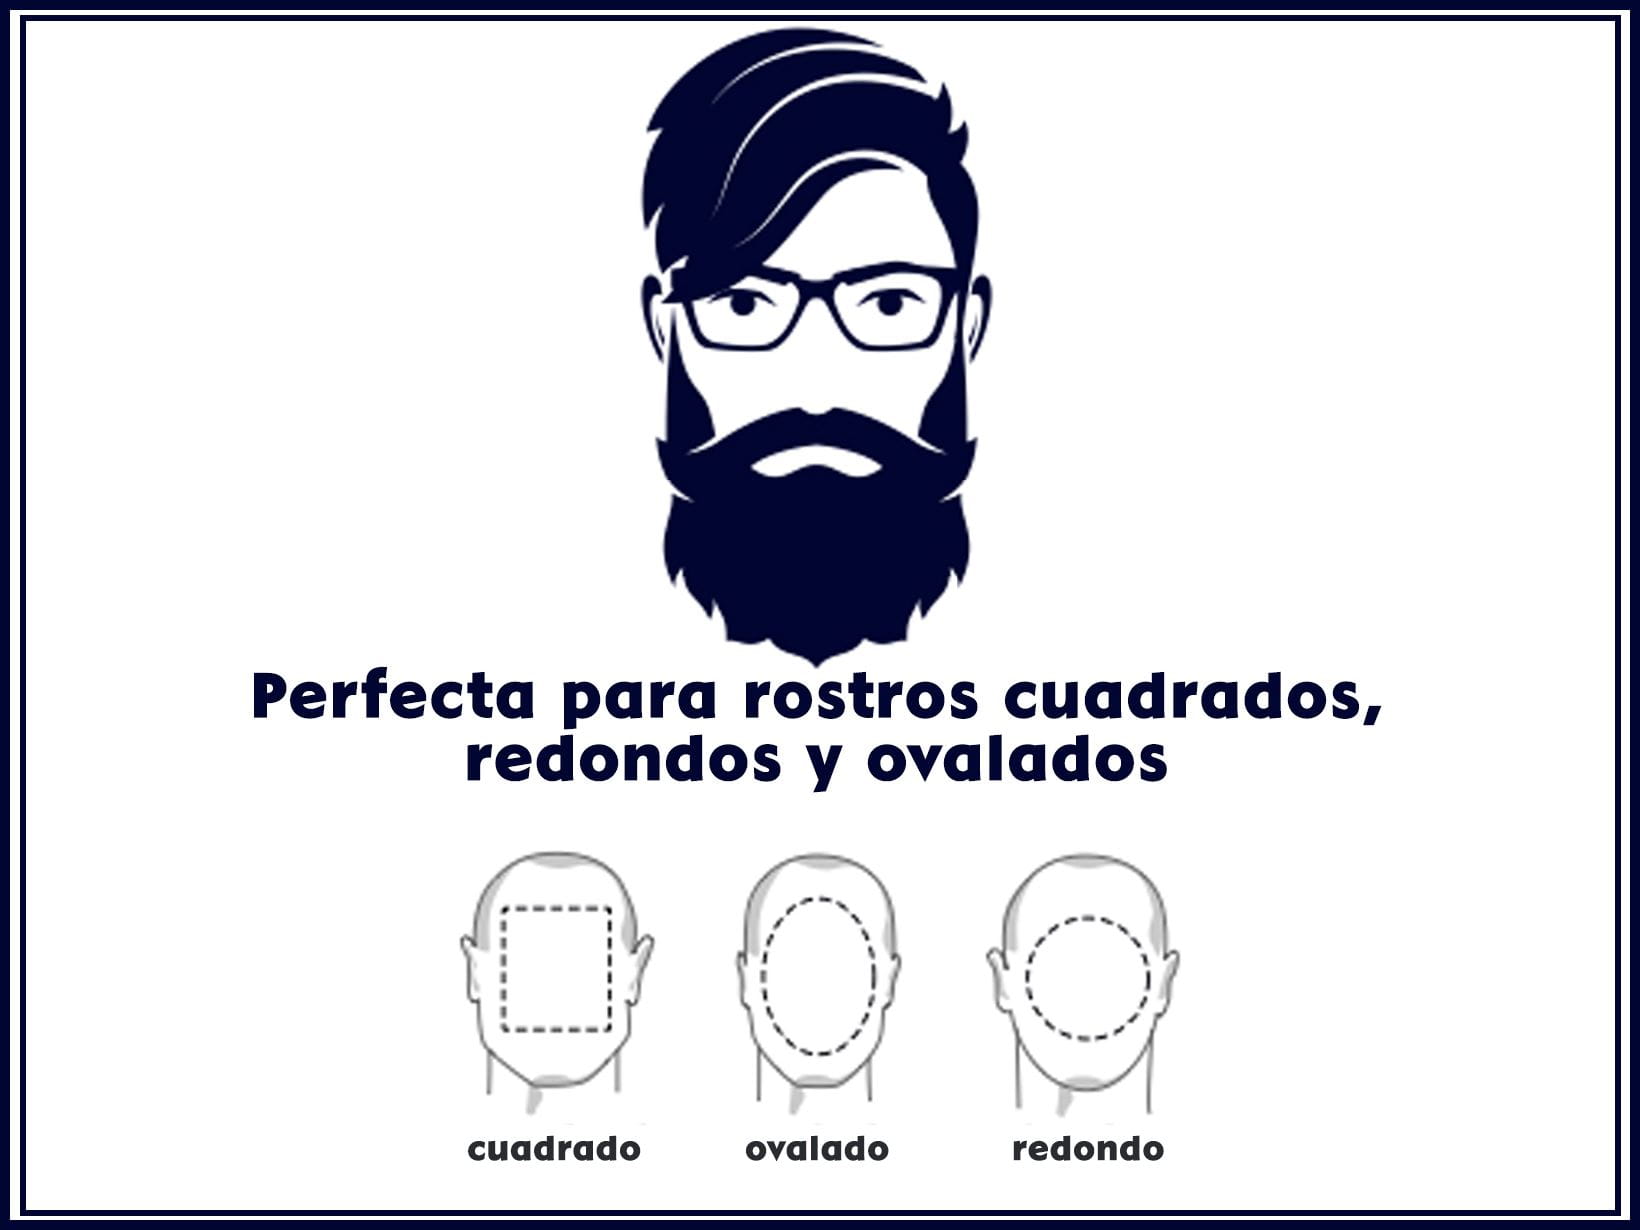 Tu cuidado de barbería en casa | NIVEA MEN